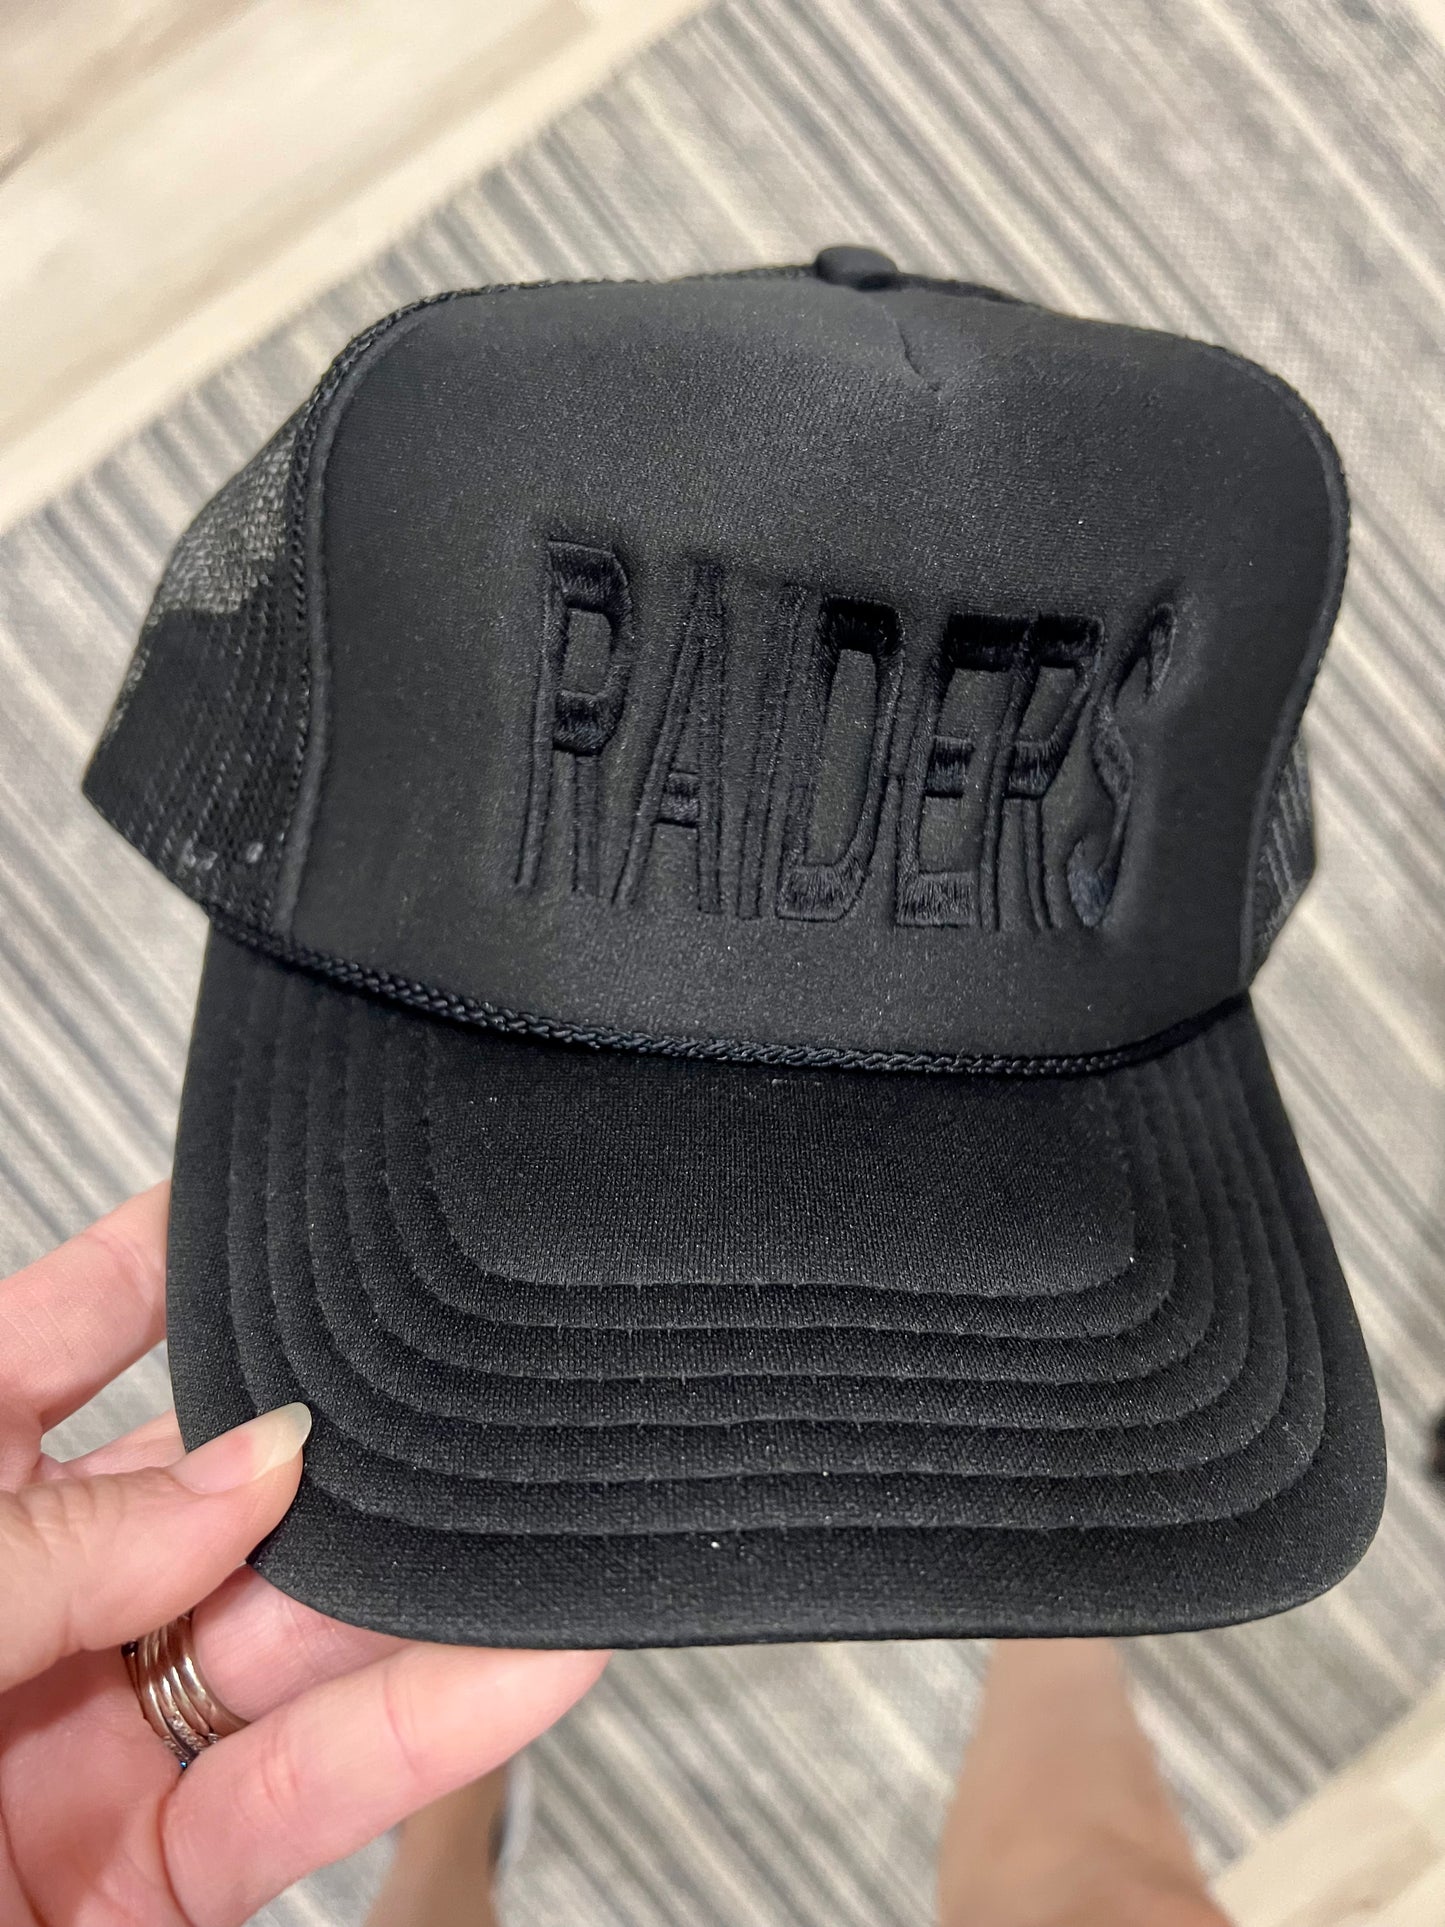 Raiders Trucker Hat